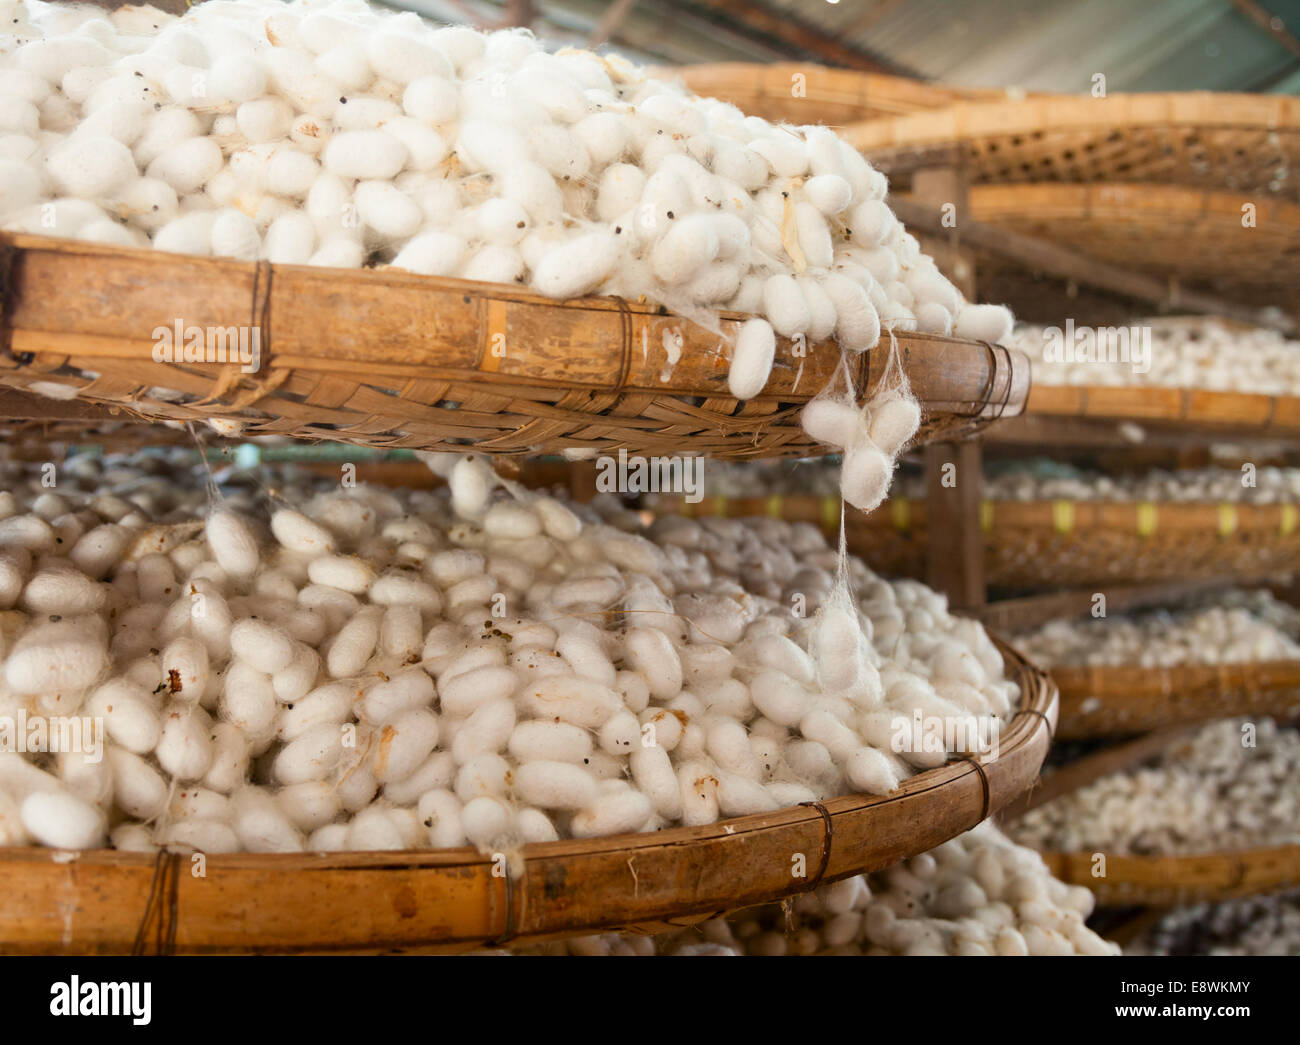 Les cocons de vers à soie avec des paniers dans une usine de soie Banque D'Images